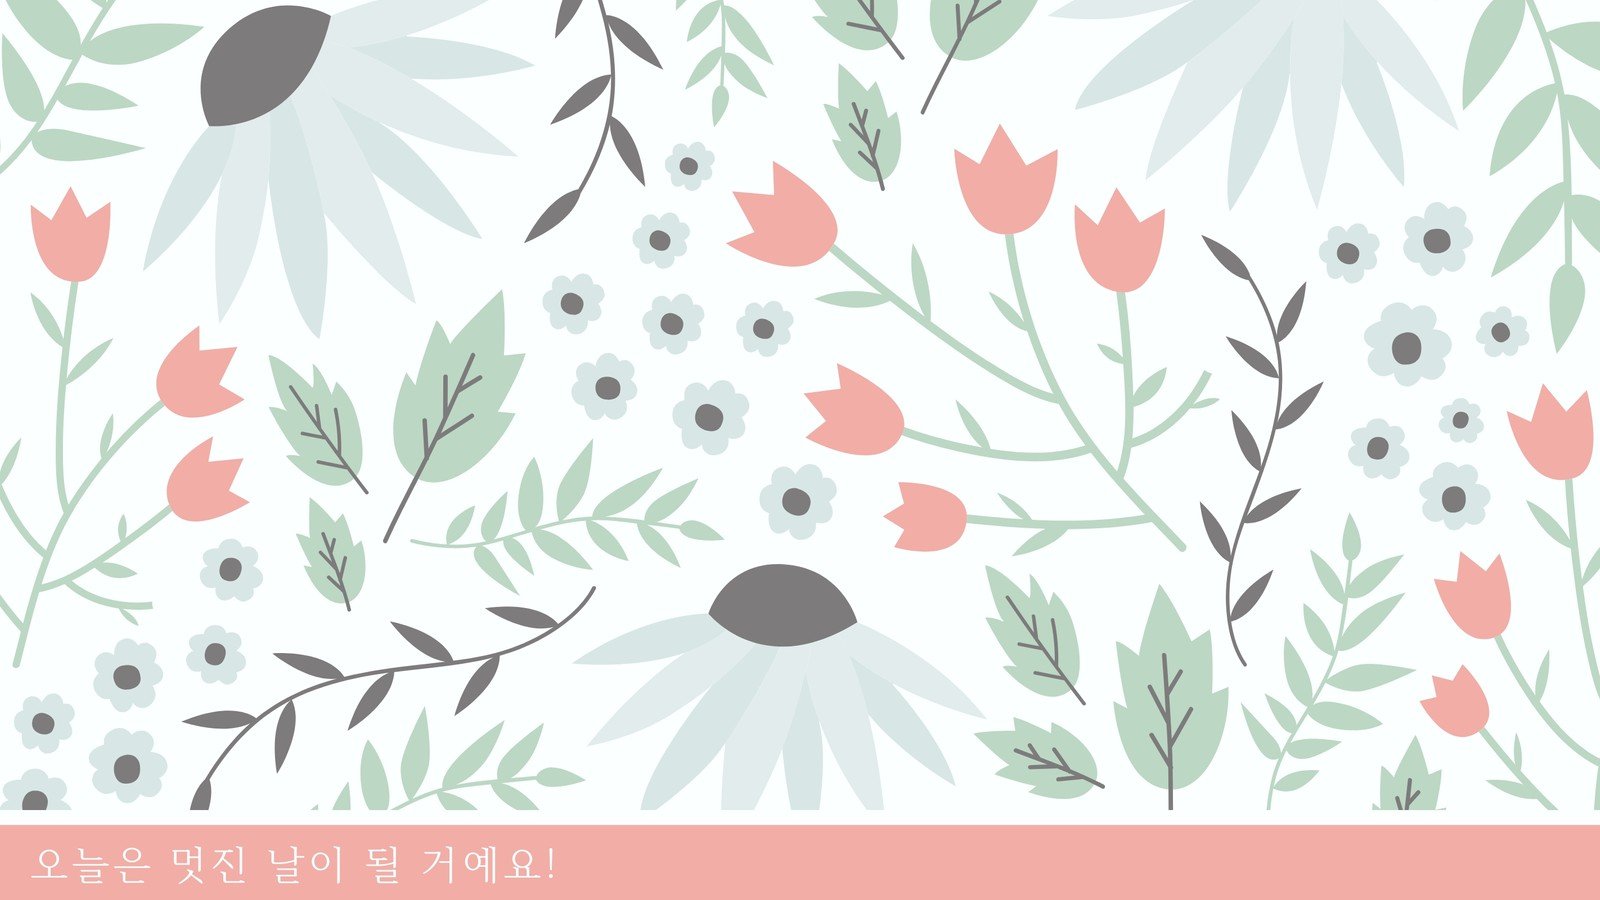 데스크탑 꽃 배경화면 템플릿 무료 다운로드. 저작권 걱정 없는 디자인 | Canva(캔바)